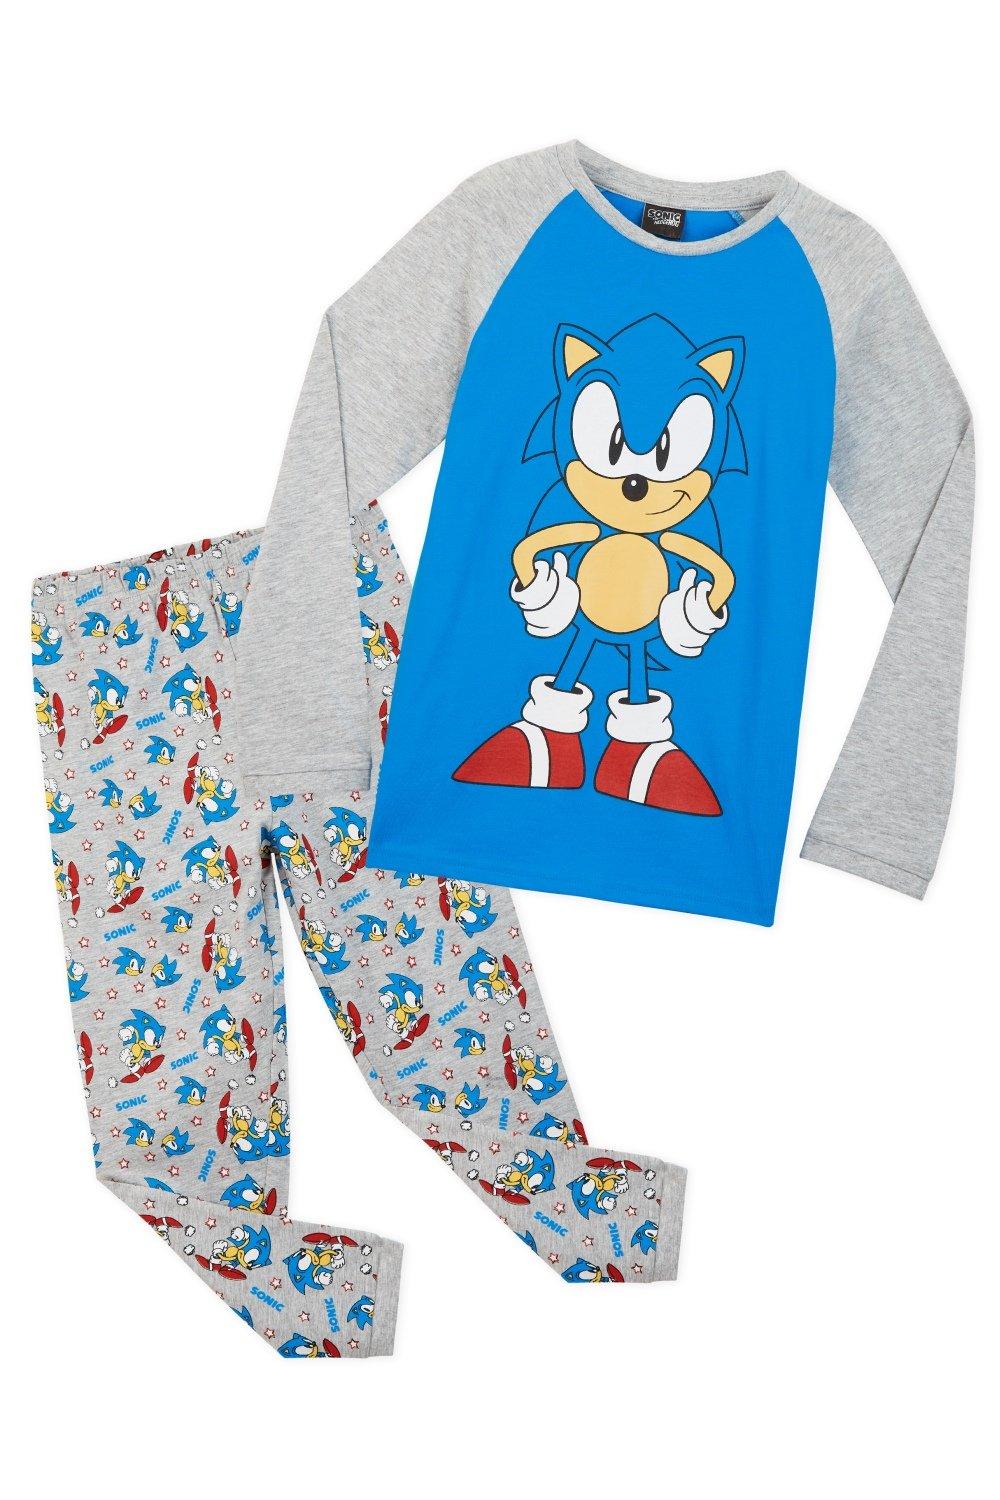 Пижамный комплект Sonic the Hedgehog, мультиколор детская одежда весенняя и летняя детская домашняя одежда с кондиционированием плотная пижама с длинными рукавами детский комбинезон